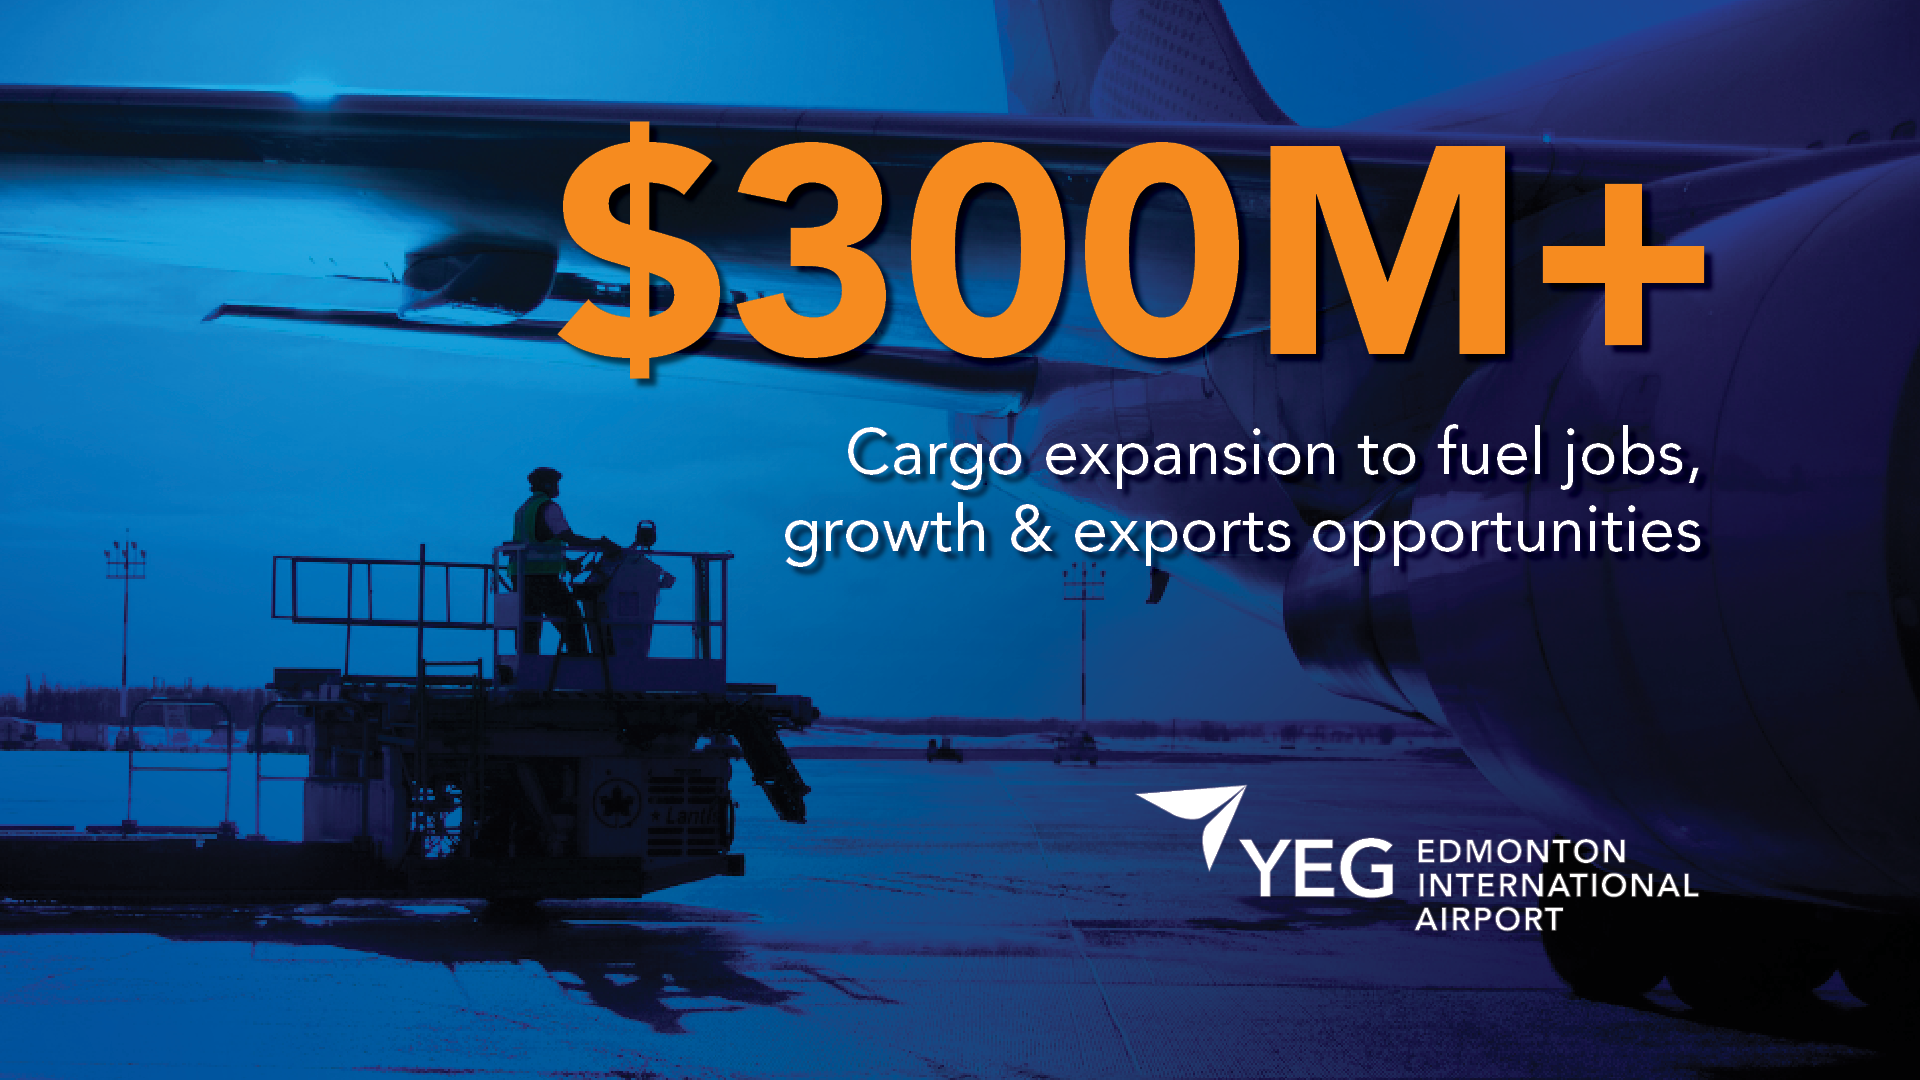 Croissance d'une valeur de 300M $ du cargo pour stimuler les emplois, la croissance et les opportunités d'exportation